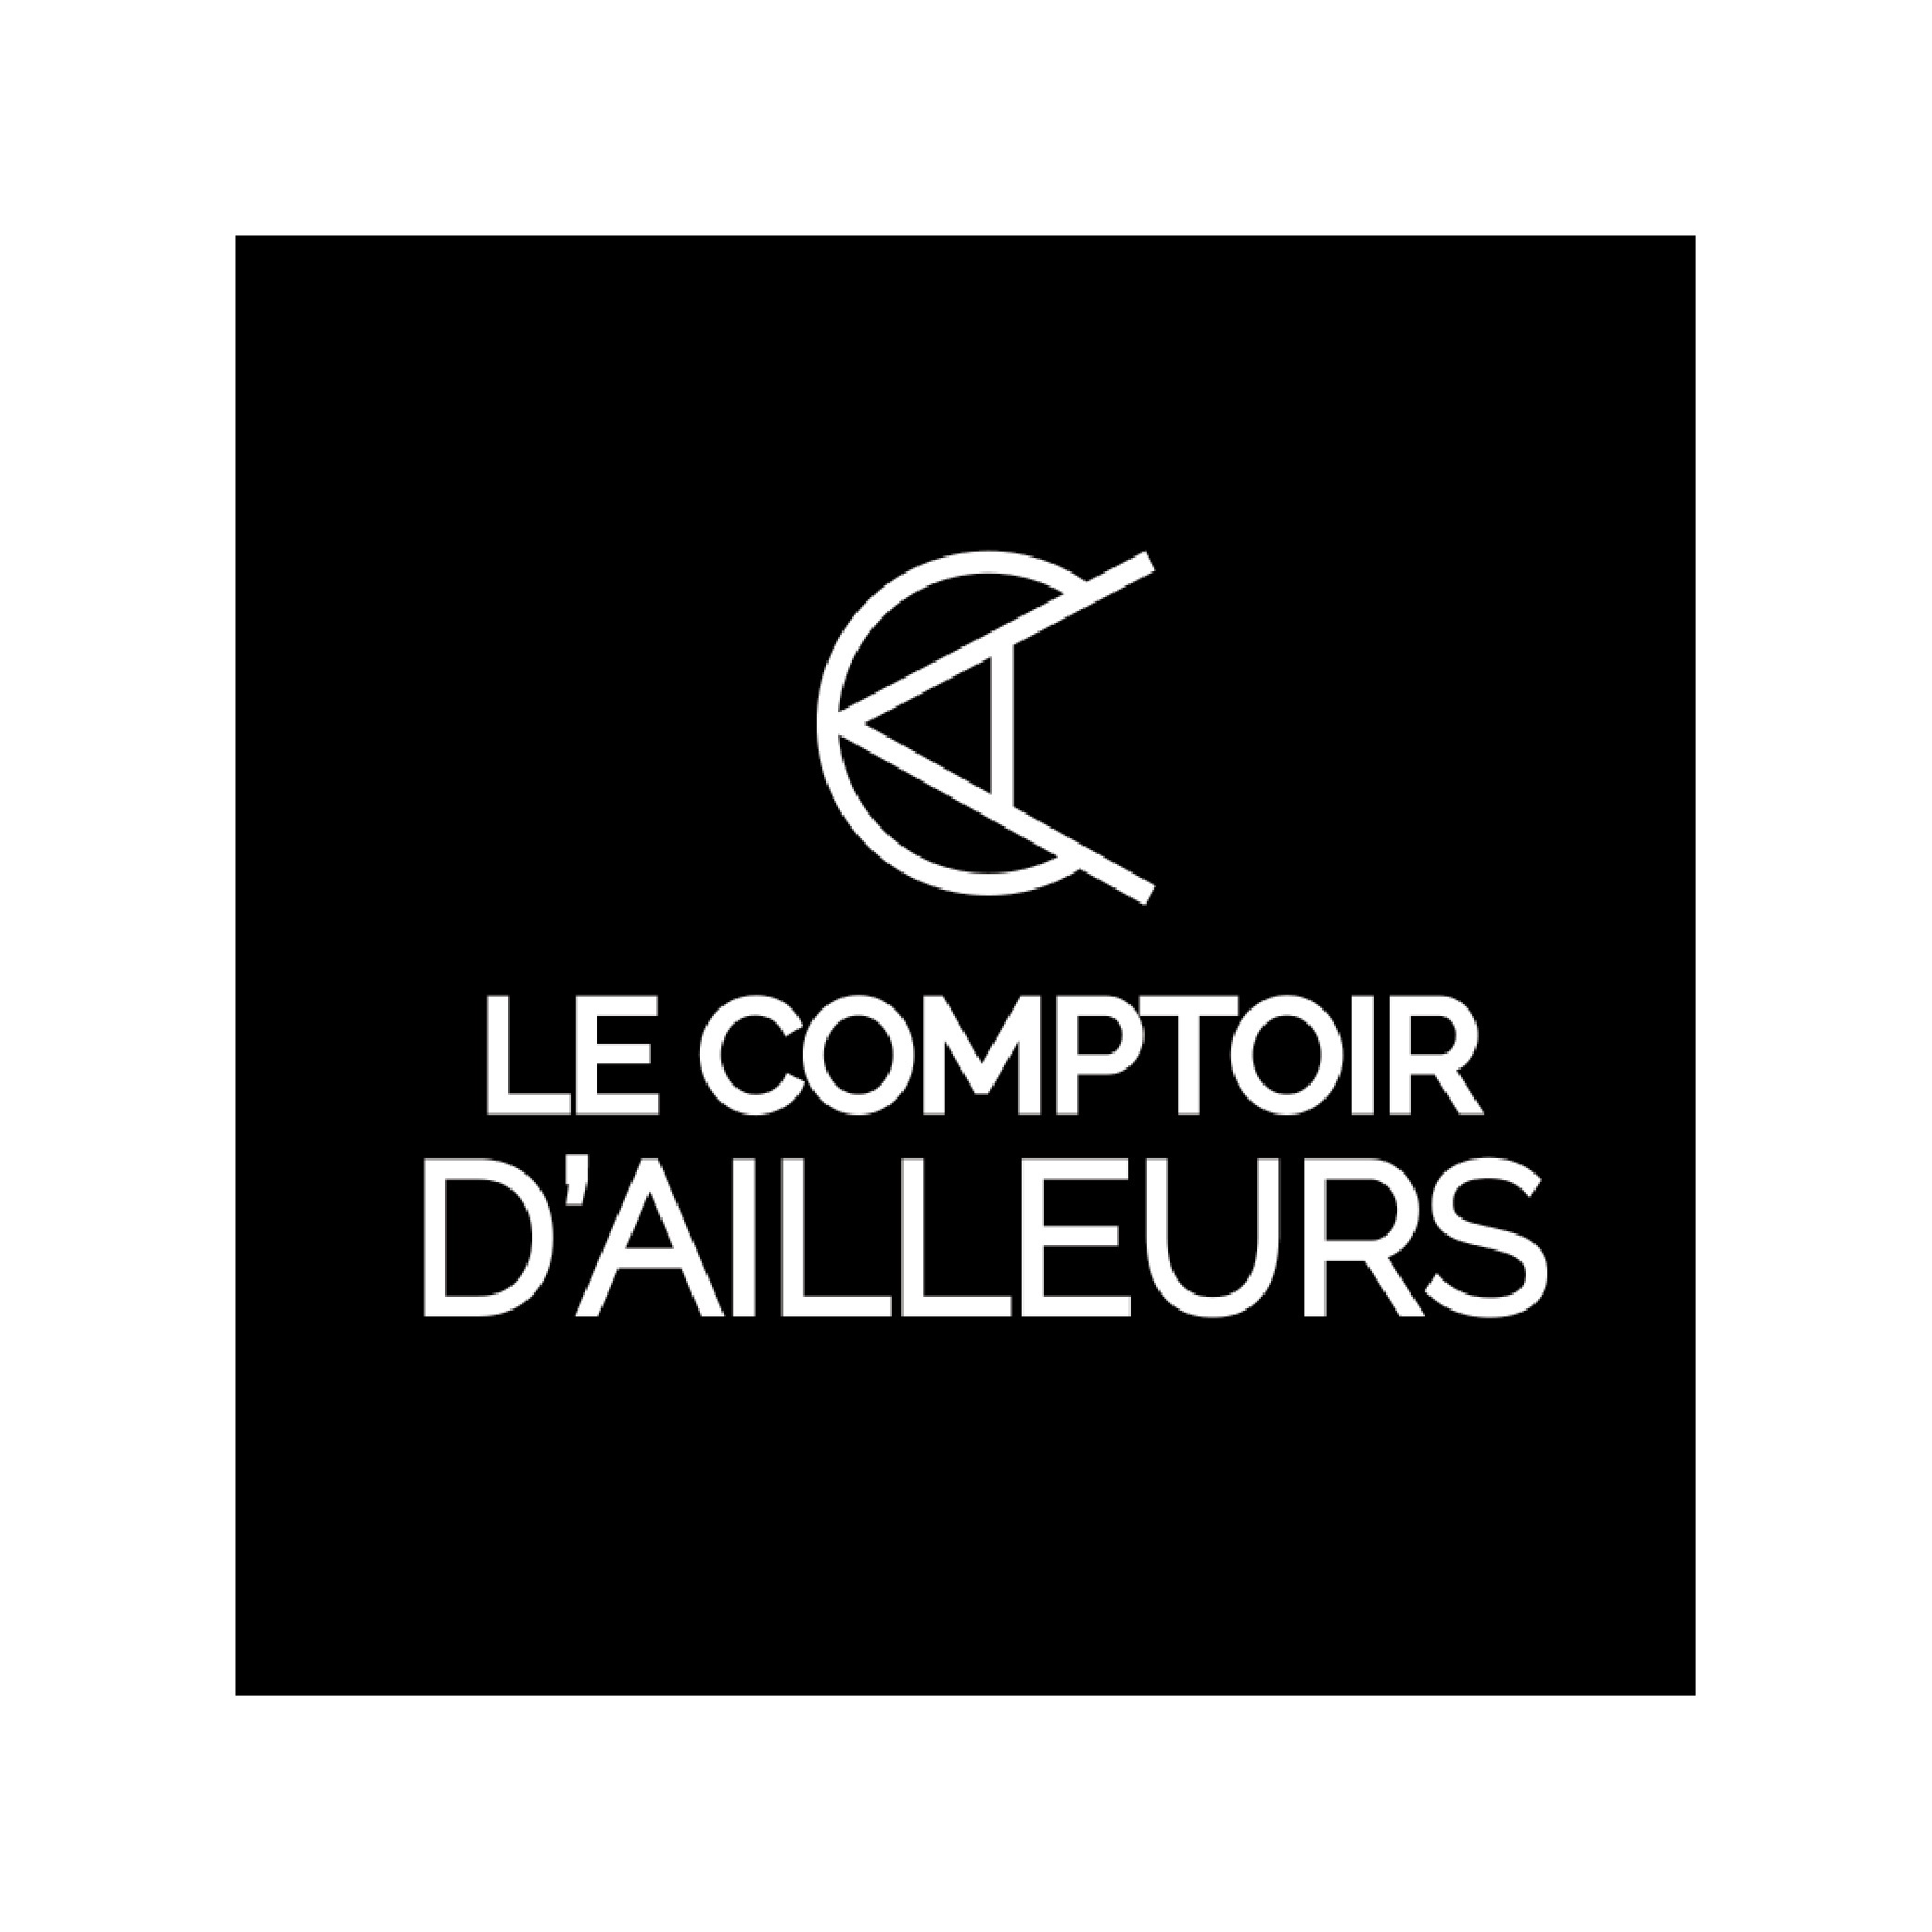 LOGO LE COMPTOIR D'AILLEURS